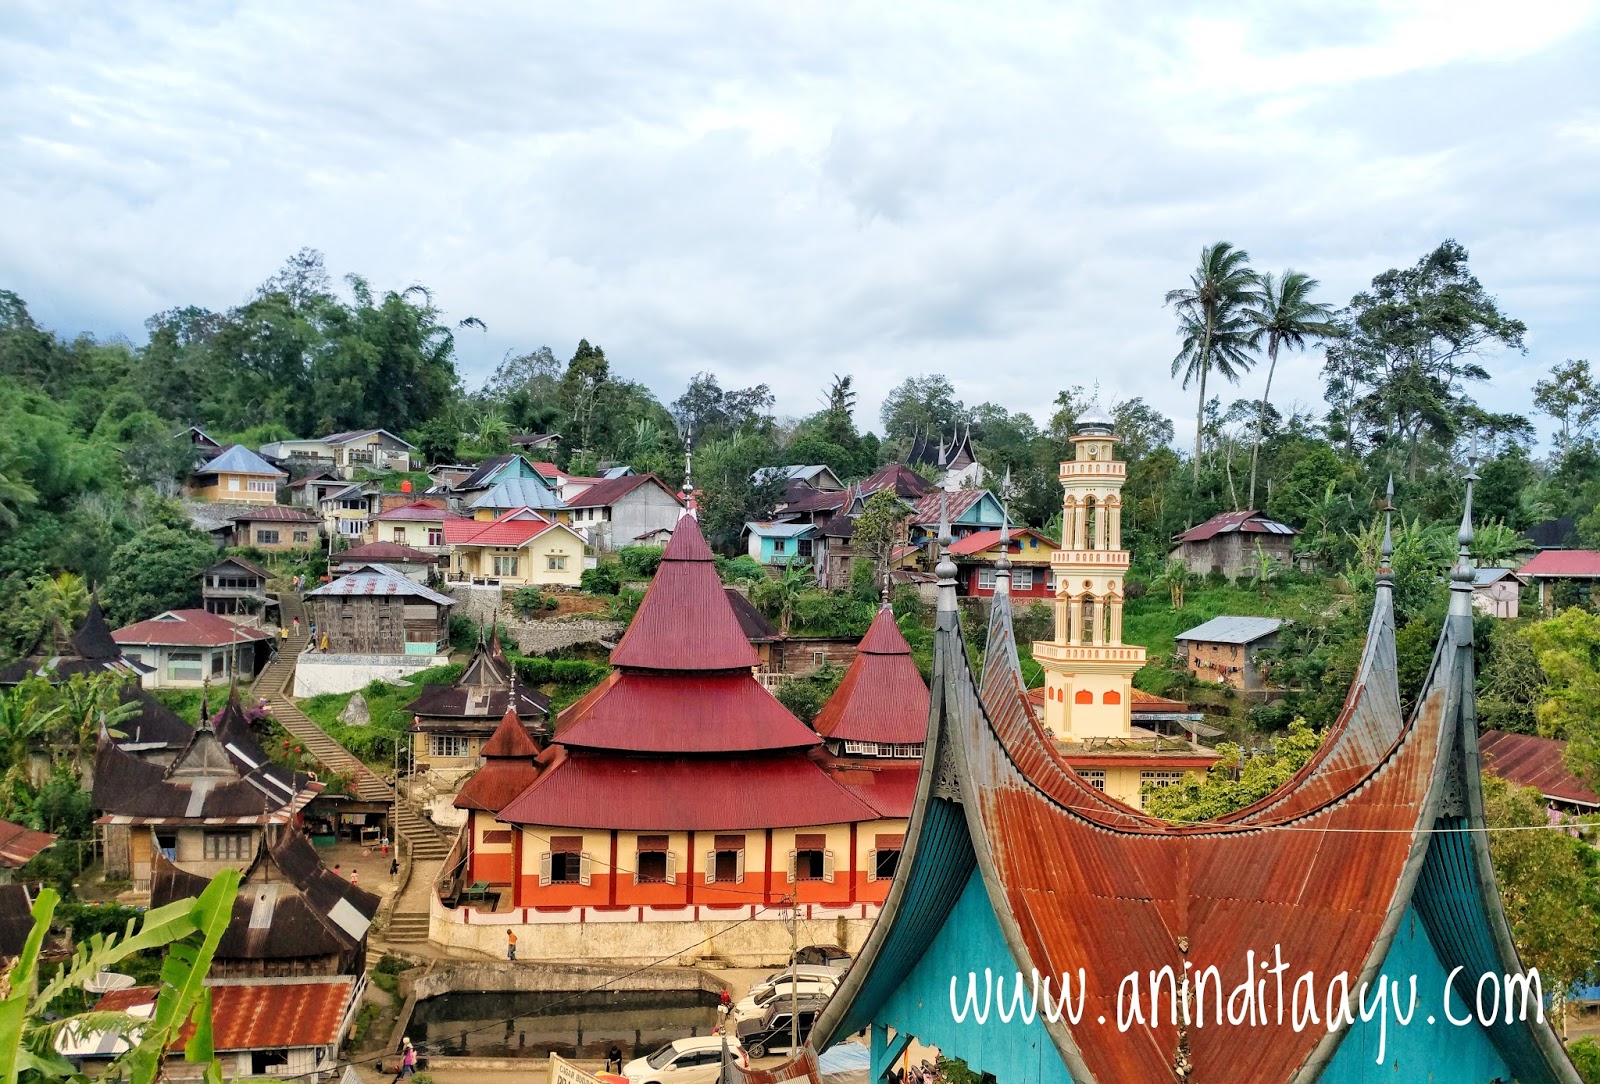 Desa Paling Indah Sedunia, Sumatera Barat liburan di luar kota